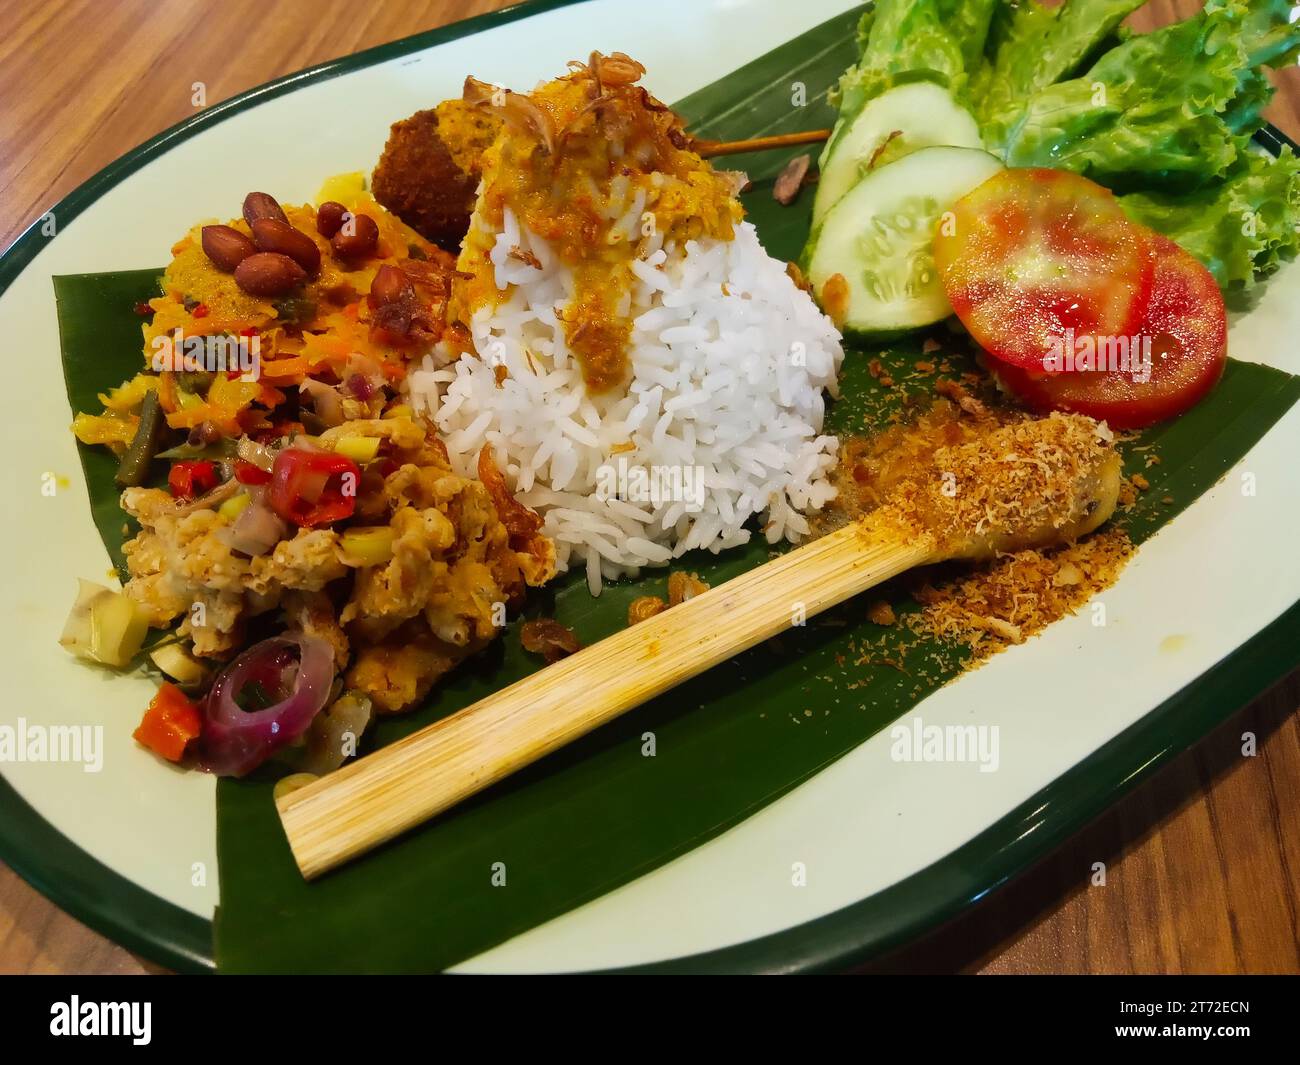 Nasi Campur Bali Vegan - Veganer Balinesischer Gemischter Reis. Eine beliebte balinesische Küche in Form von Reis mit verschiedenen Beilagen, diese Version wird für Ten serviert Stockfoto